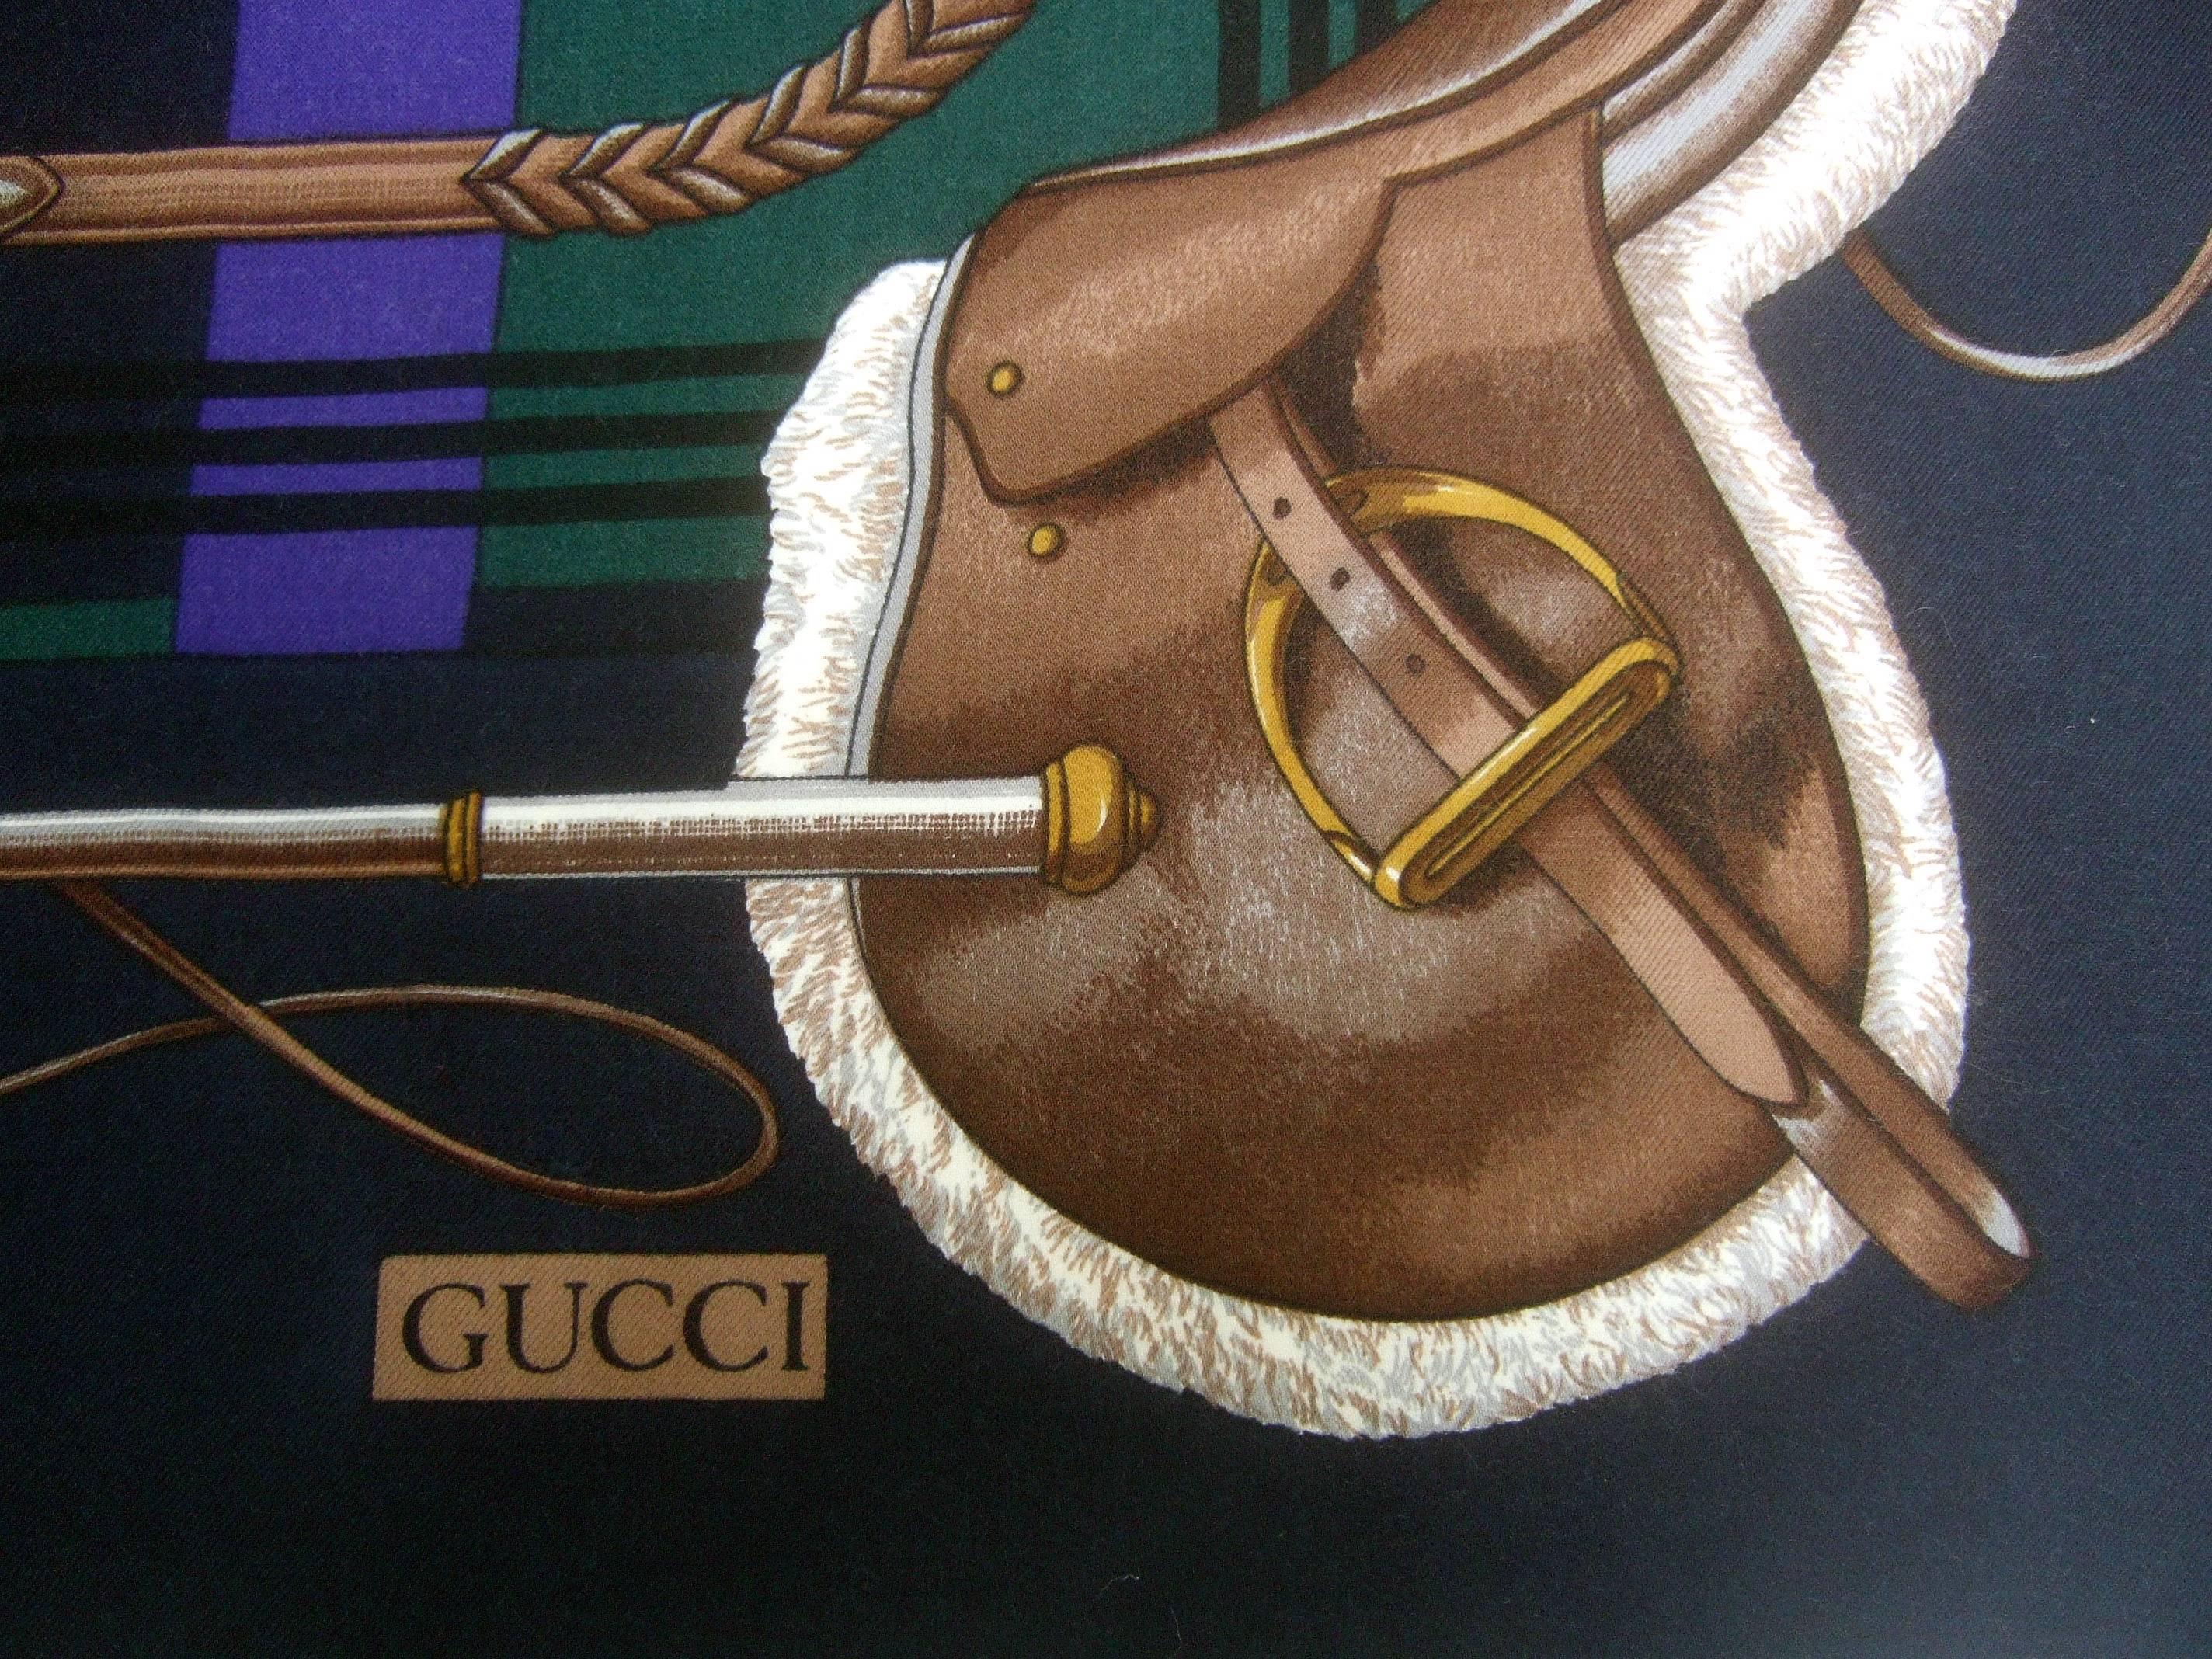 Gucci Italy Châle massif en laine à thème équestre - l'écharpe mesure 52 x 52 
L'élégant châle - foulard italien est conçu avec un bloc de couleurs
des panneaux de couleur violet aubergine et vert chasseur sur fond de  
un fond noir 

Chacun des